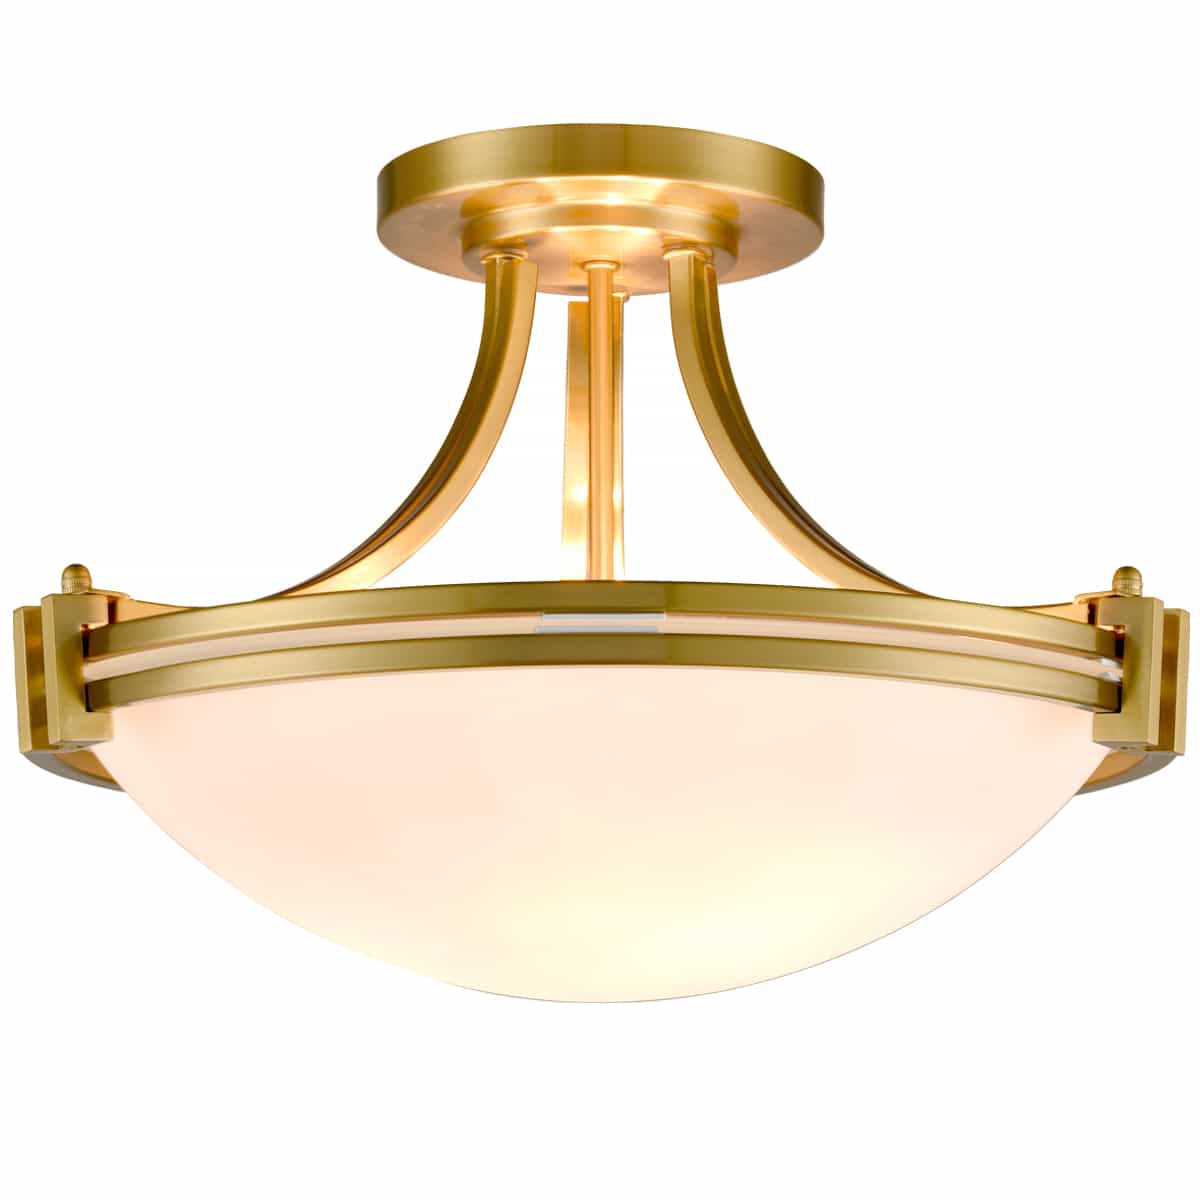 Brass Semi Flush Mount Ceiling Light 3-Light White Glass Shade